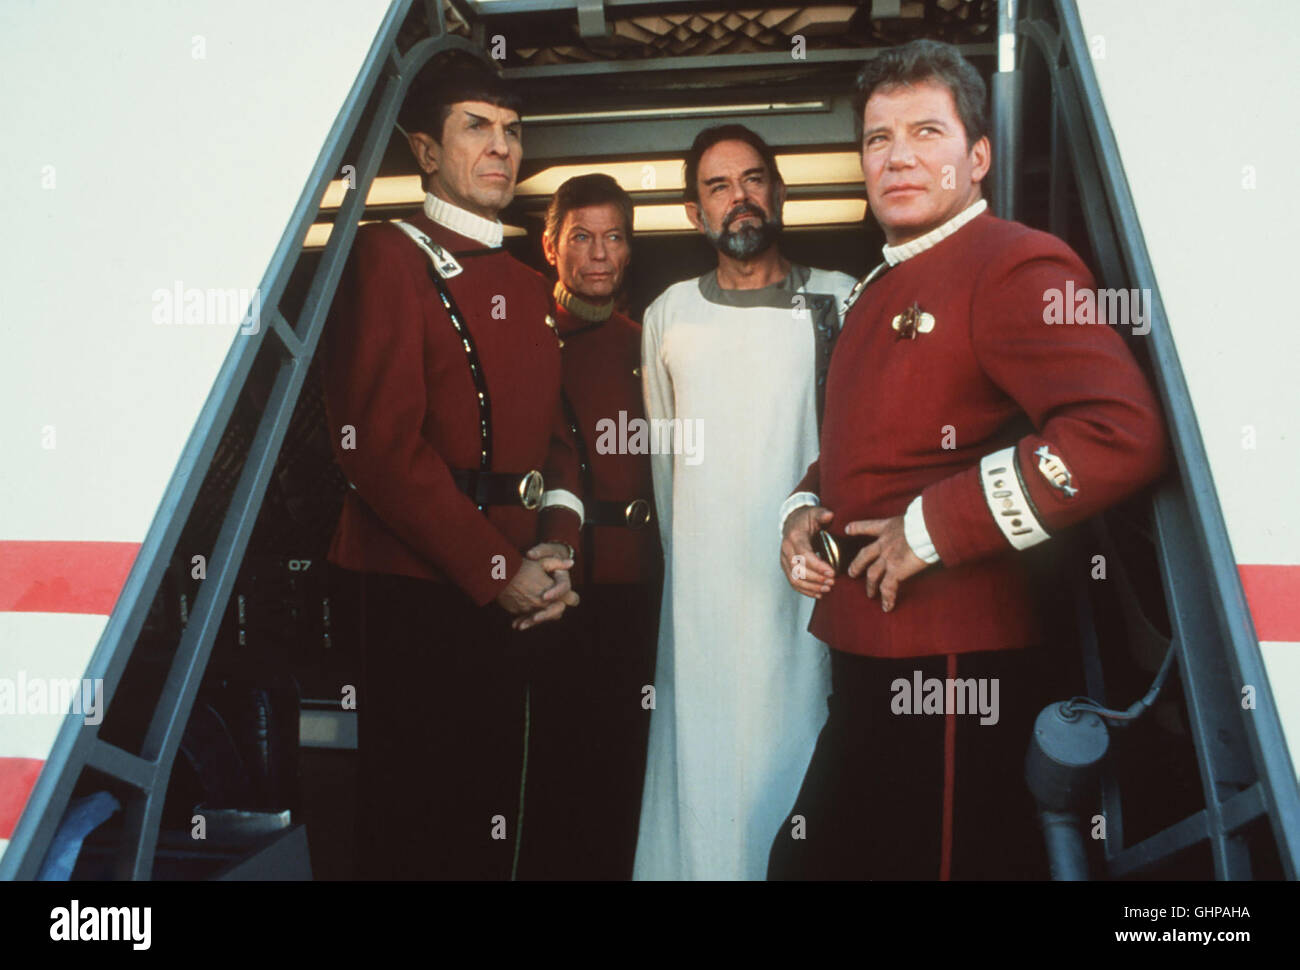 Star Trek V - Am rande des universums Die Enterprise wird mitsamt ihrer Mannschaft von dem vulkanischen Herrscher Sybok gekapert und begibt sich auf die Suche nach Gott... Foto vlnr.: Mr. Spock (LEONARD NIMOY), Dr. McCoy (DEFOREST KELLEY), Sybok (LAURENCE LUCKINBILL), Captain Kirk (WILLIAM SHATNER). Regie: William Shatner aka. Star Trek V - The Final Frontier Stock Photo